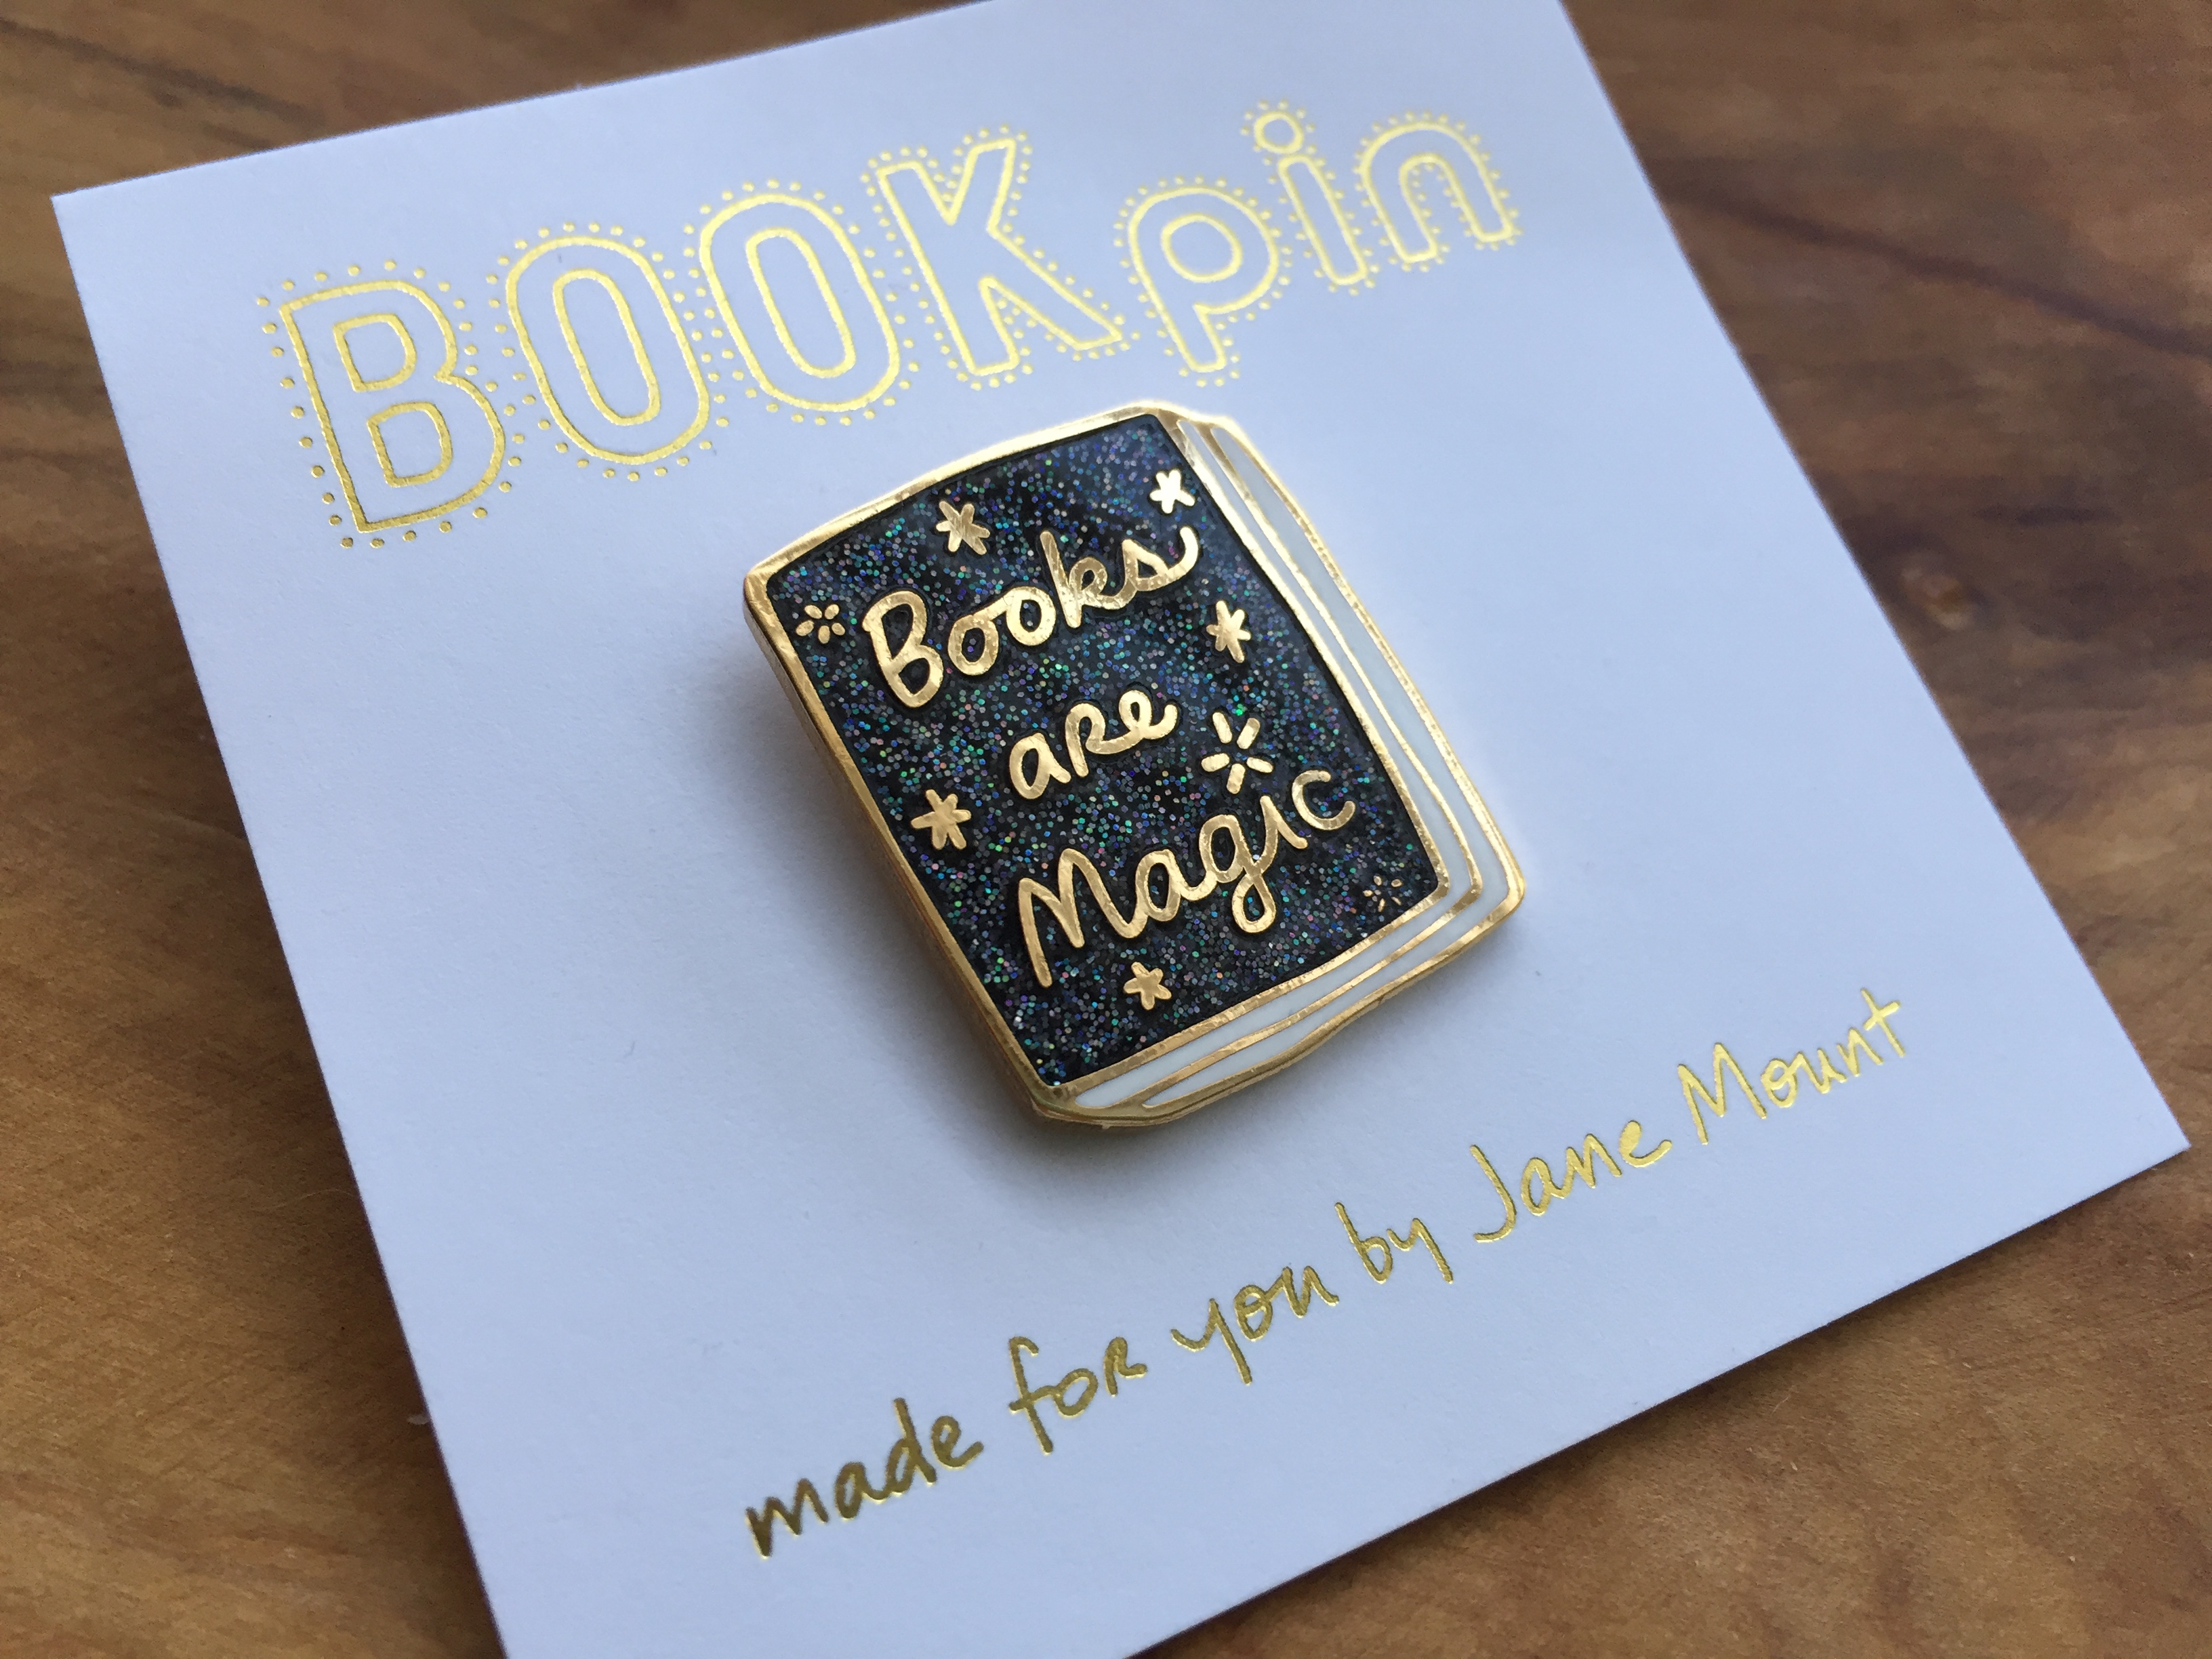 Books Are Magic Pin